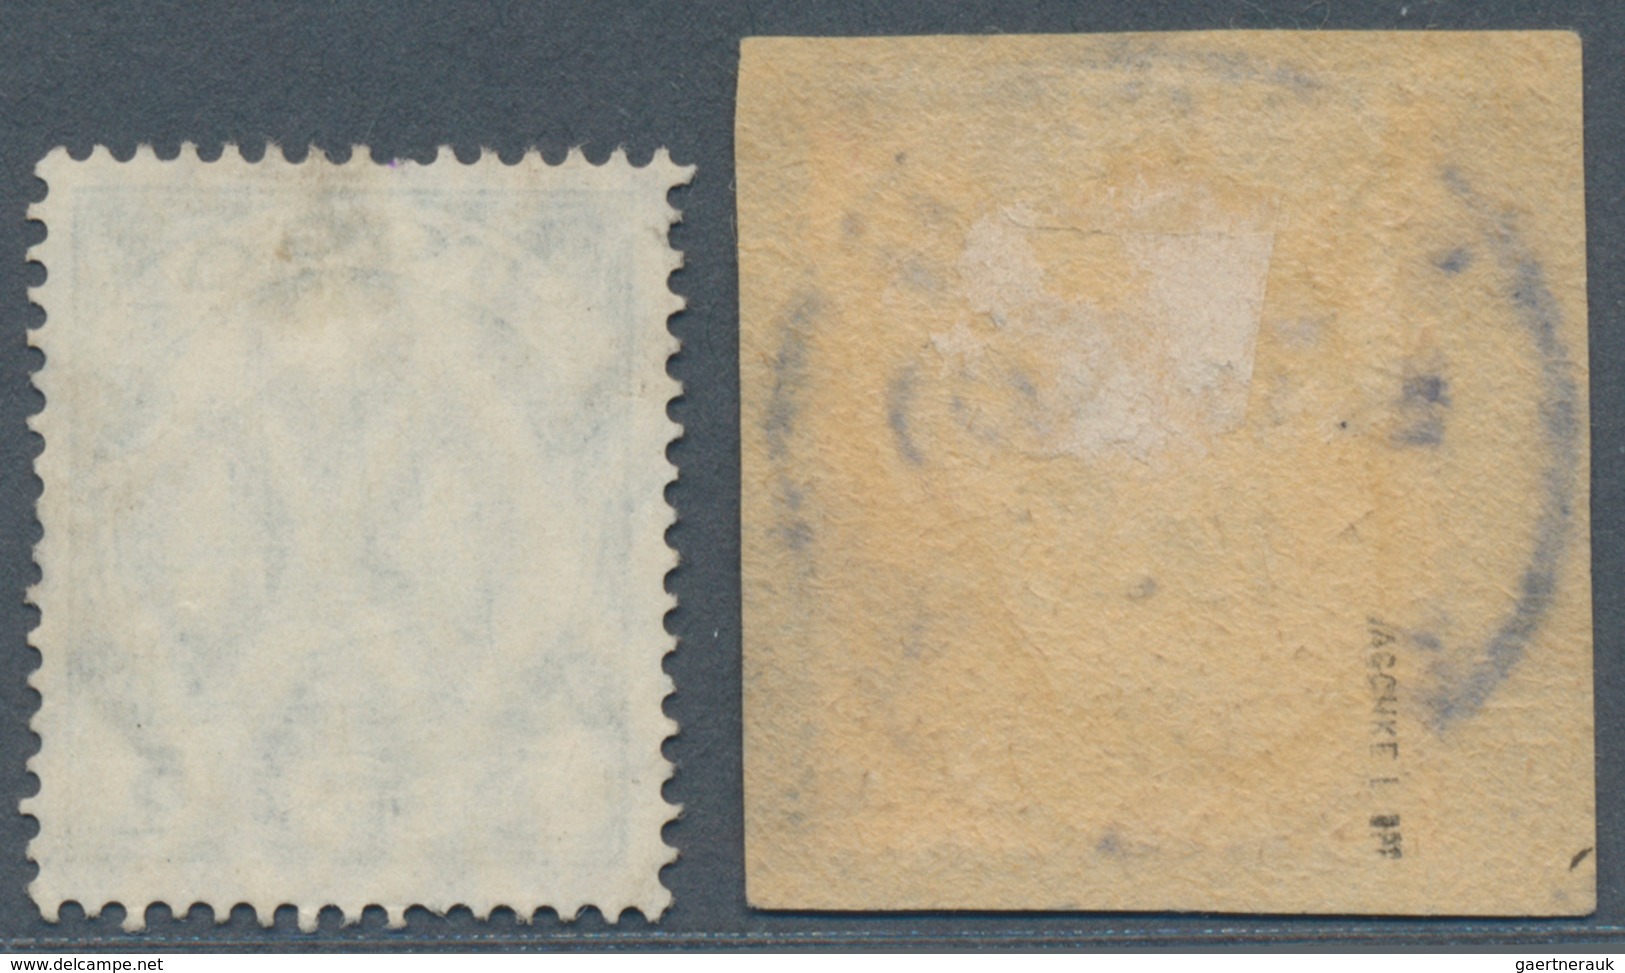 Deutsche Kolonien - Togo - Stempel: 1907/1912 Zwei Verschiedene Stempelabdrucke, Zum Einen KPANDU Ze - Togo